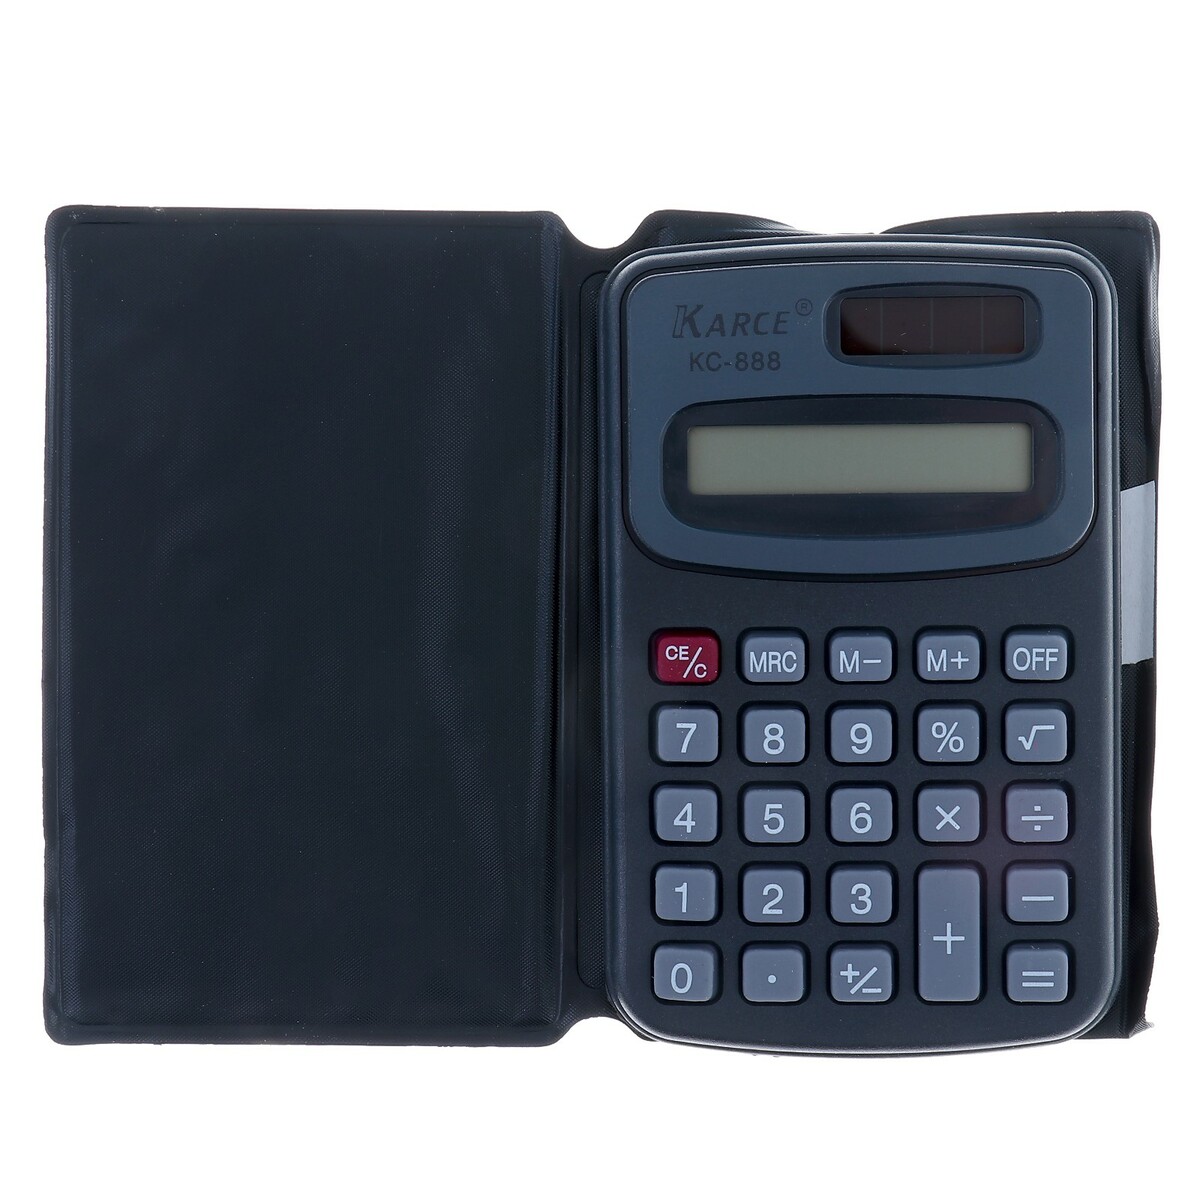 Калькулятор карманный с чехлом 8 - разрядный, kc - 888, работает от батарейки (таблетка ag 10) калькулятор карманный 8 разрядный 2239